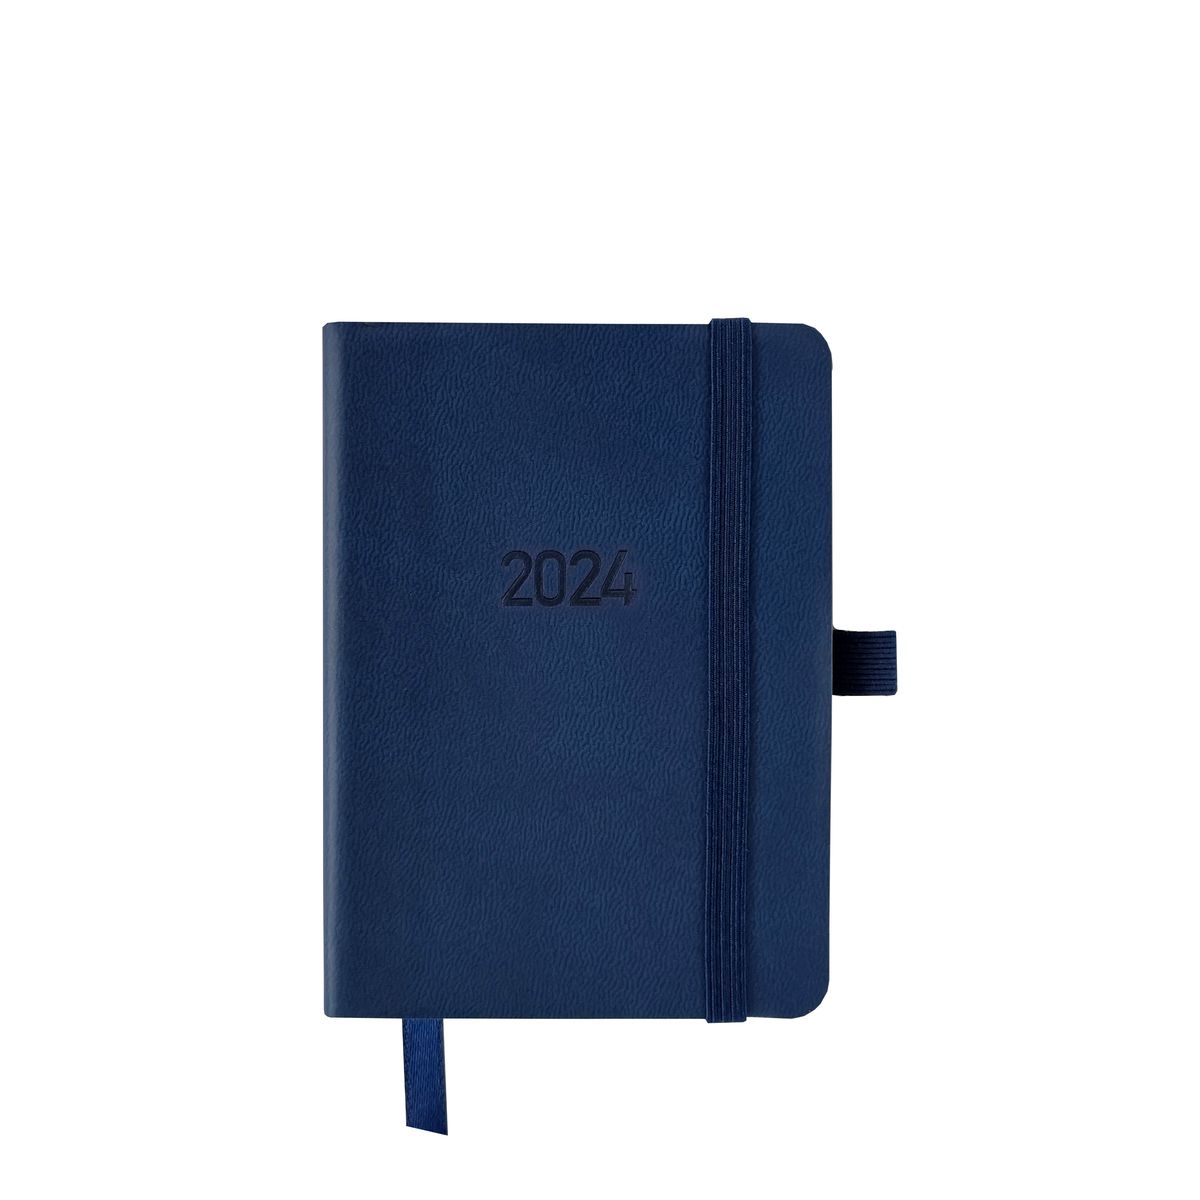 Kalendarz książkowy (terminarz) Avanti 70mm x 105mm (5901769620629)